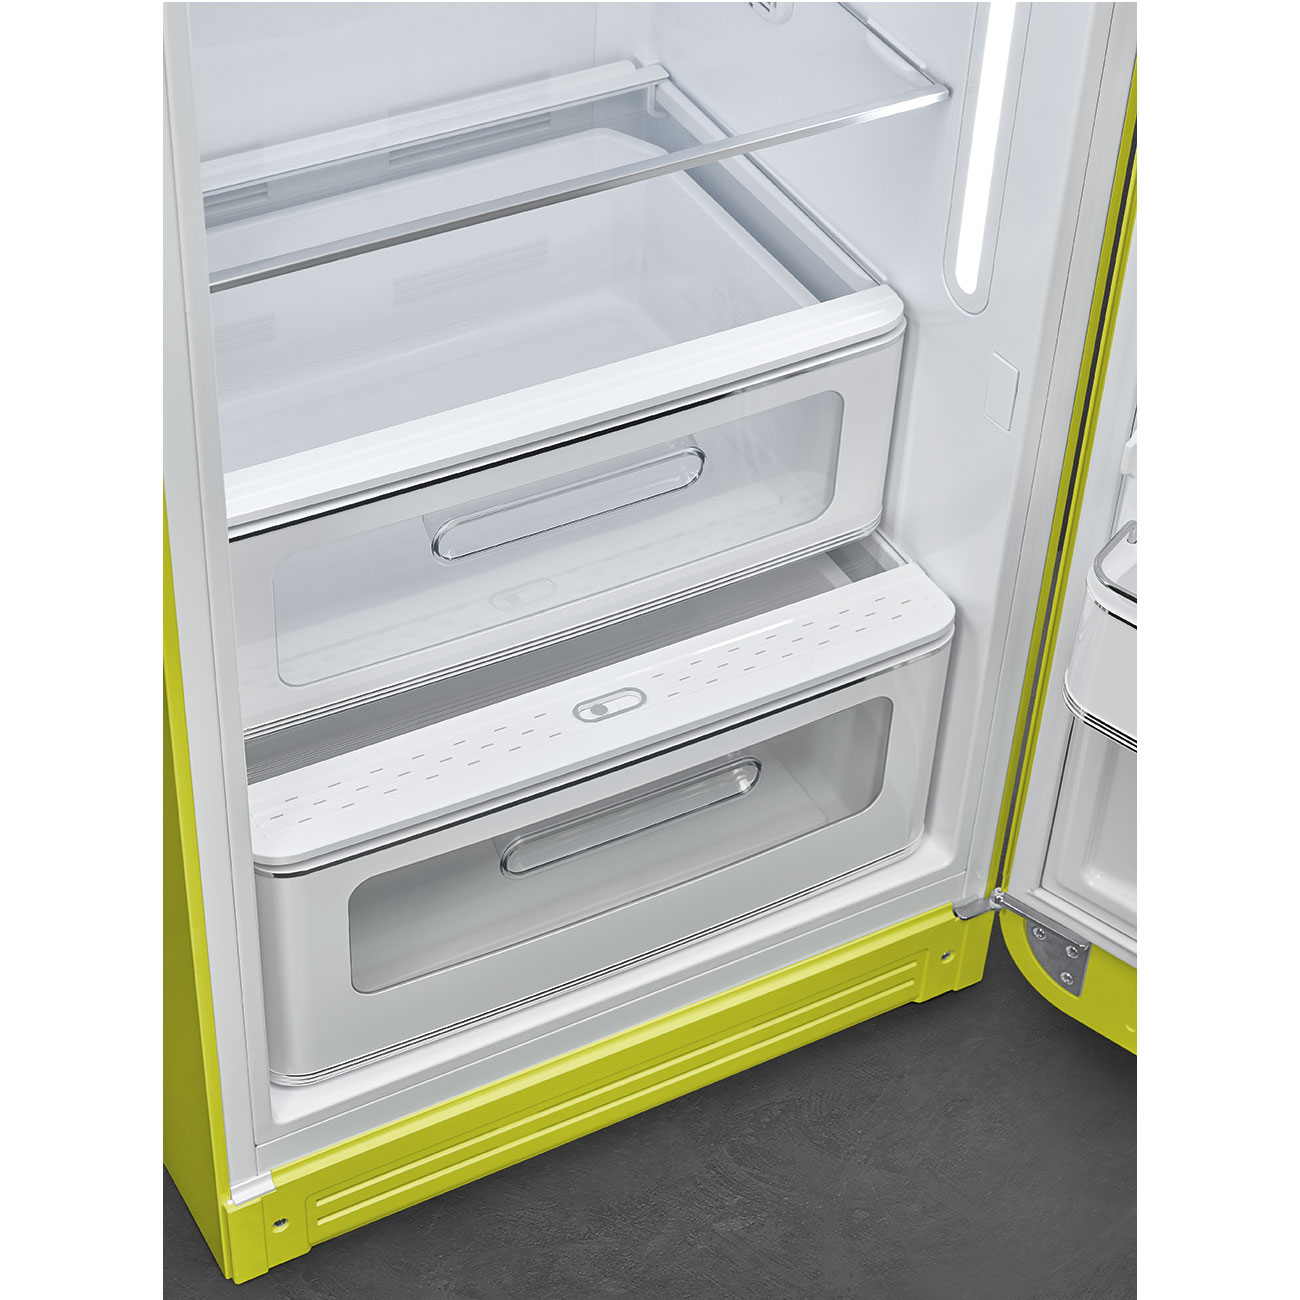 Lime green refrigerator - Smeg_6